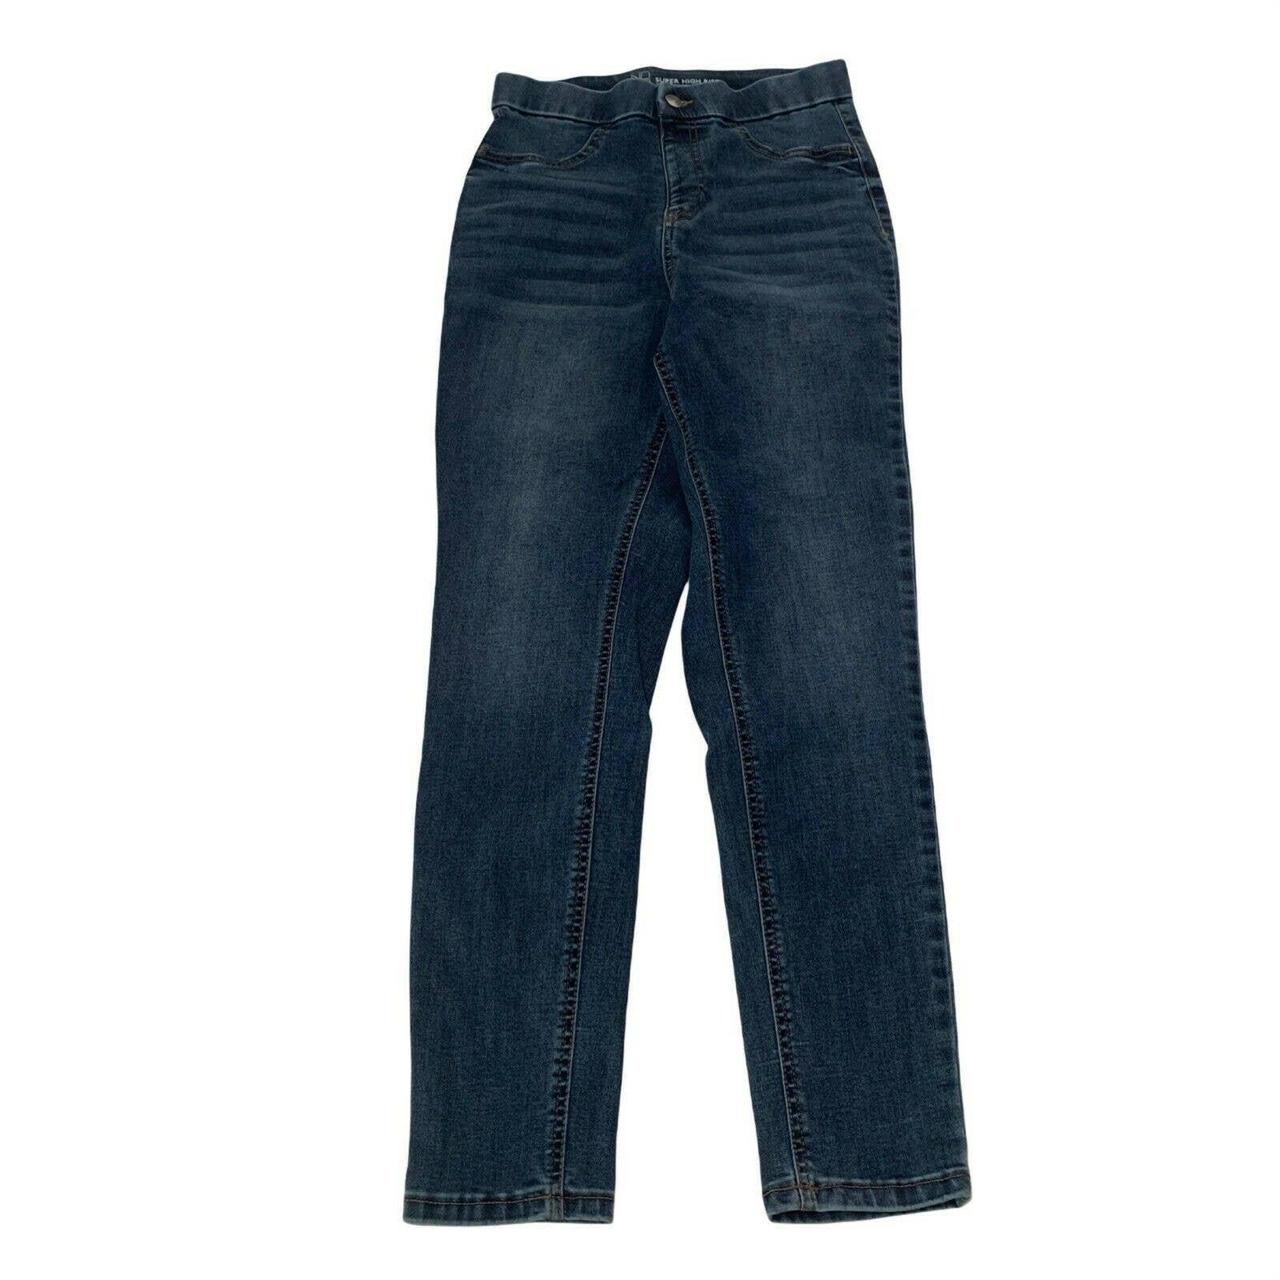 NOBO Jeggings Skinny Jeans Women's Size M (7-9) - Depop